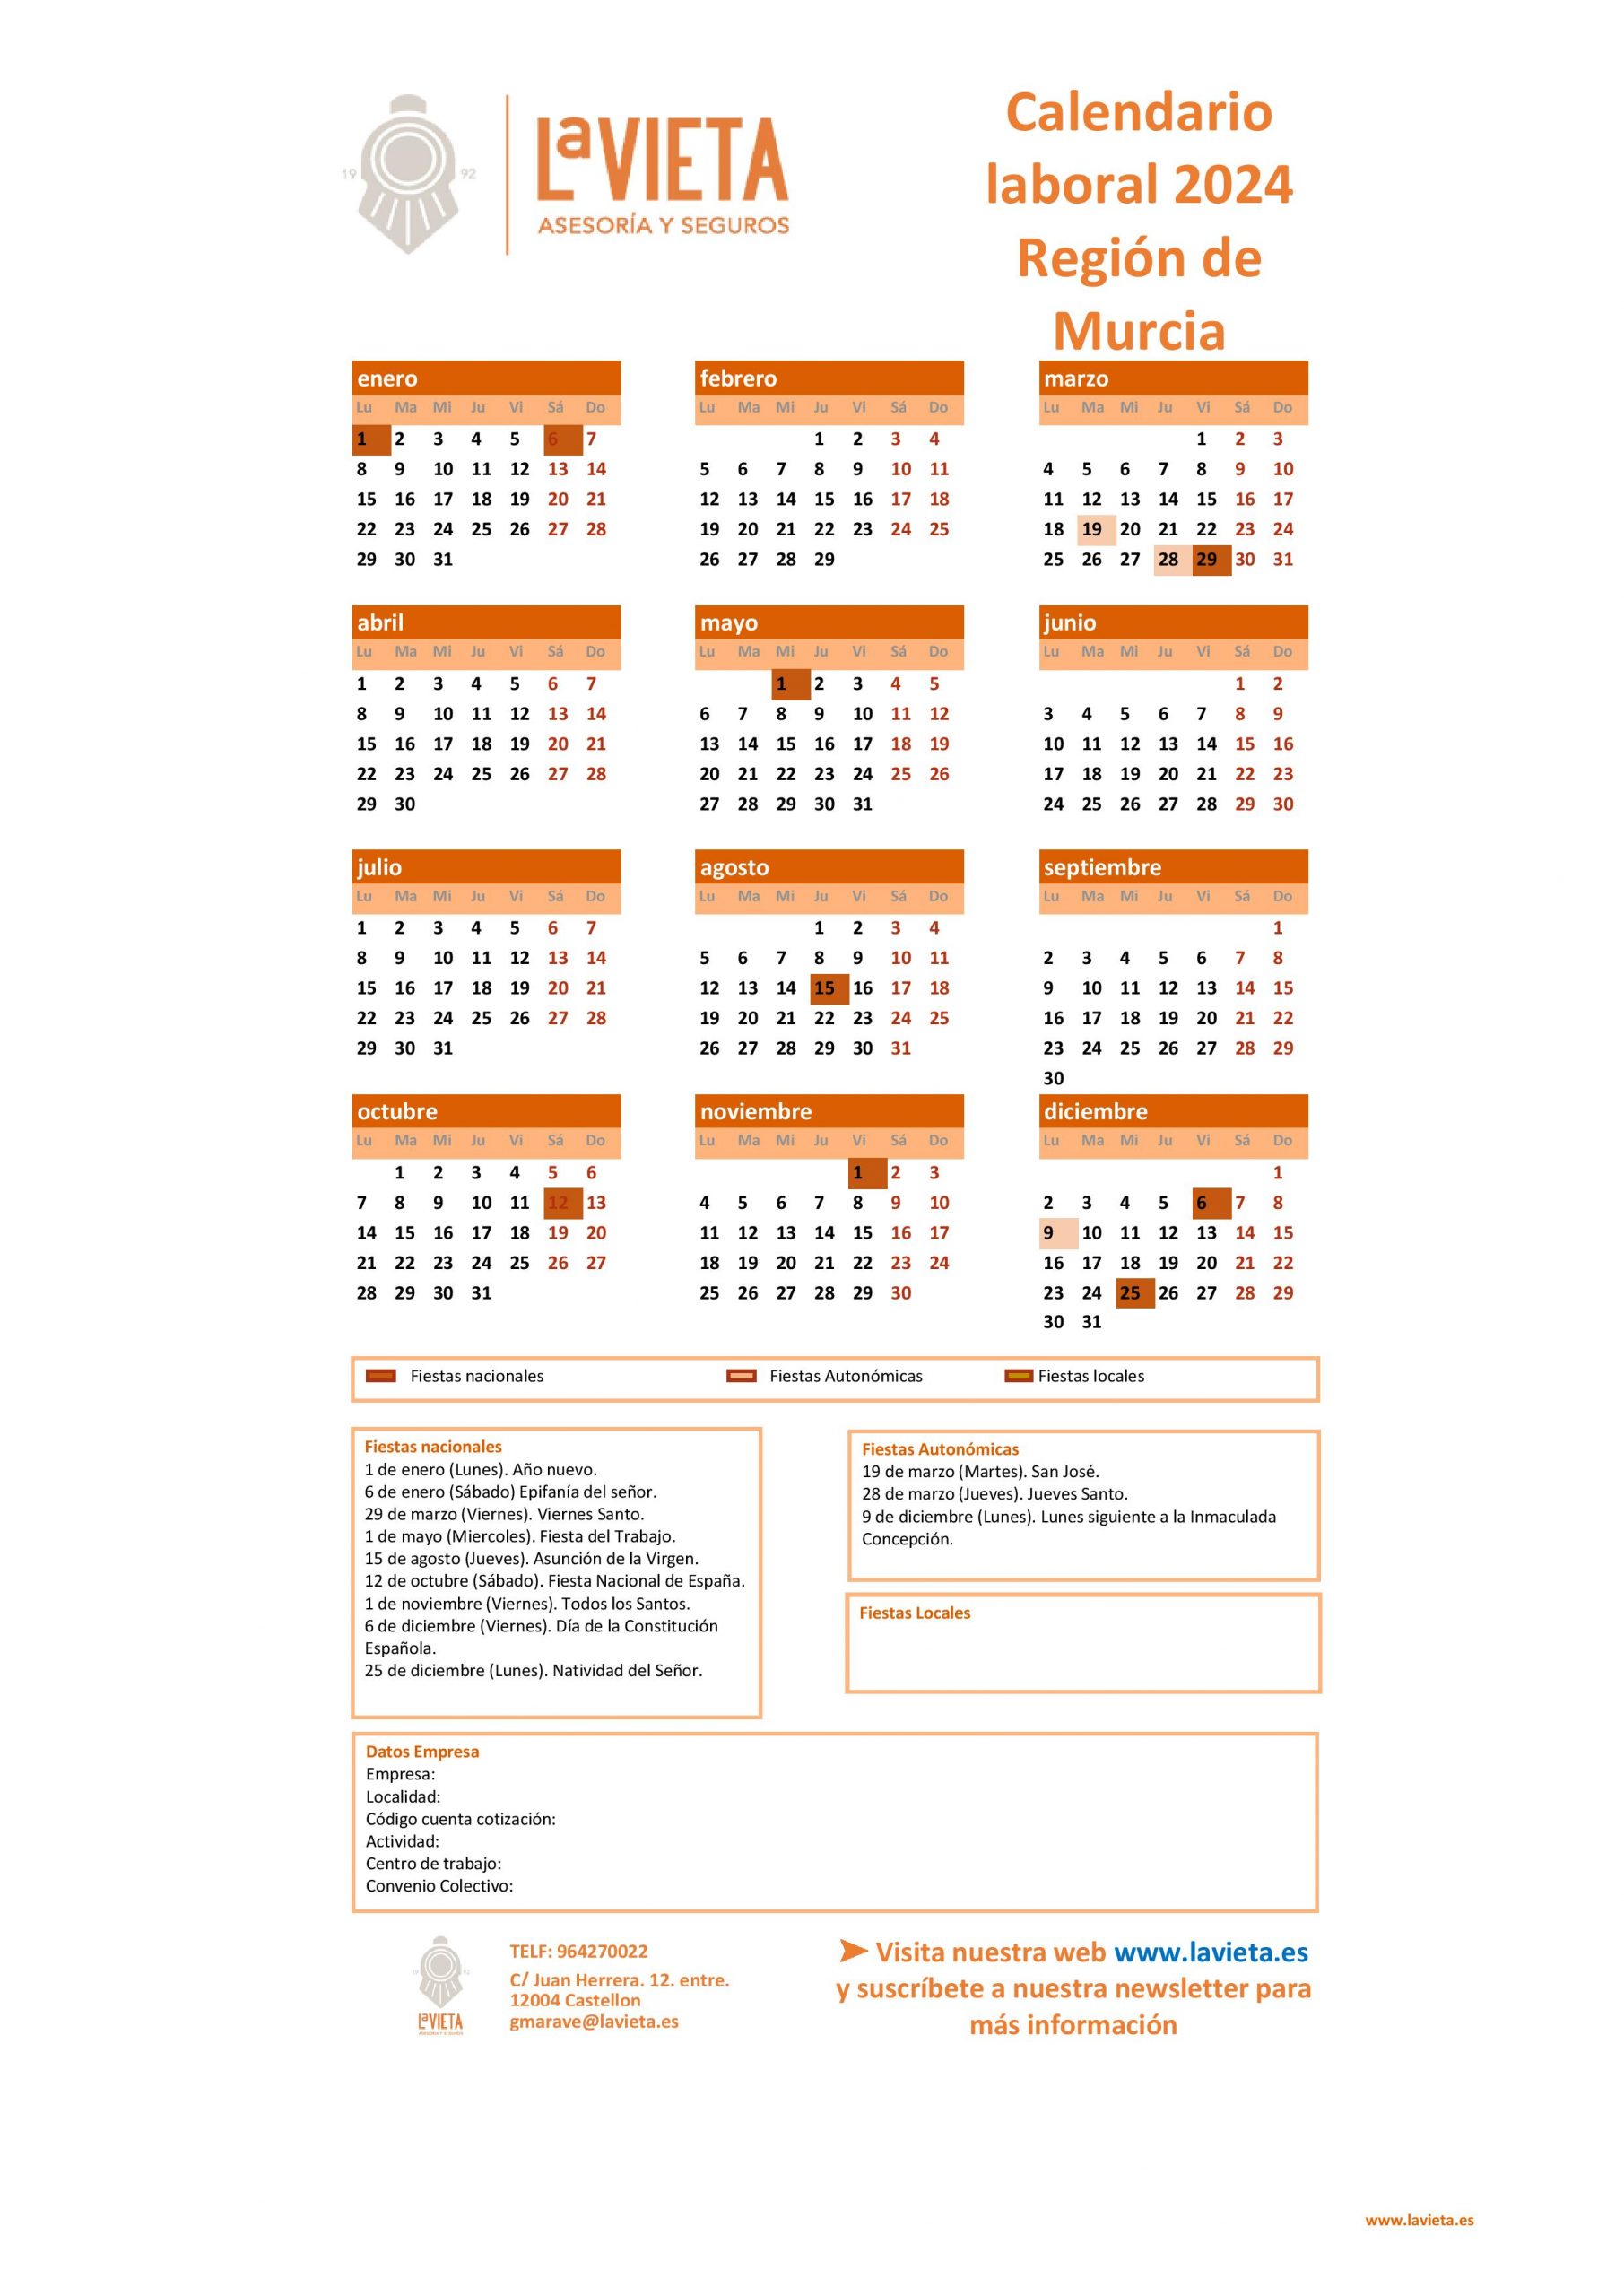 Calendario laboral de la Región de Murcia 2024 en PDF para imprimir